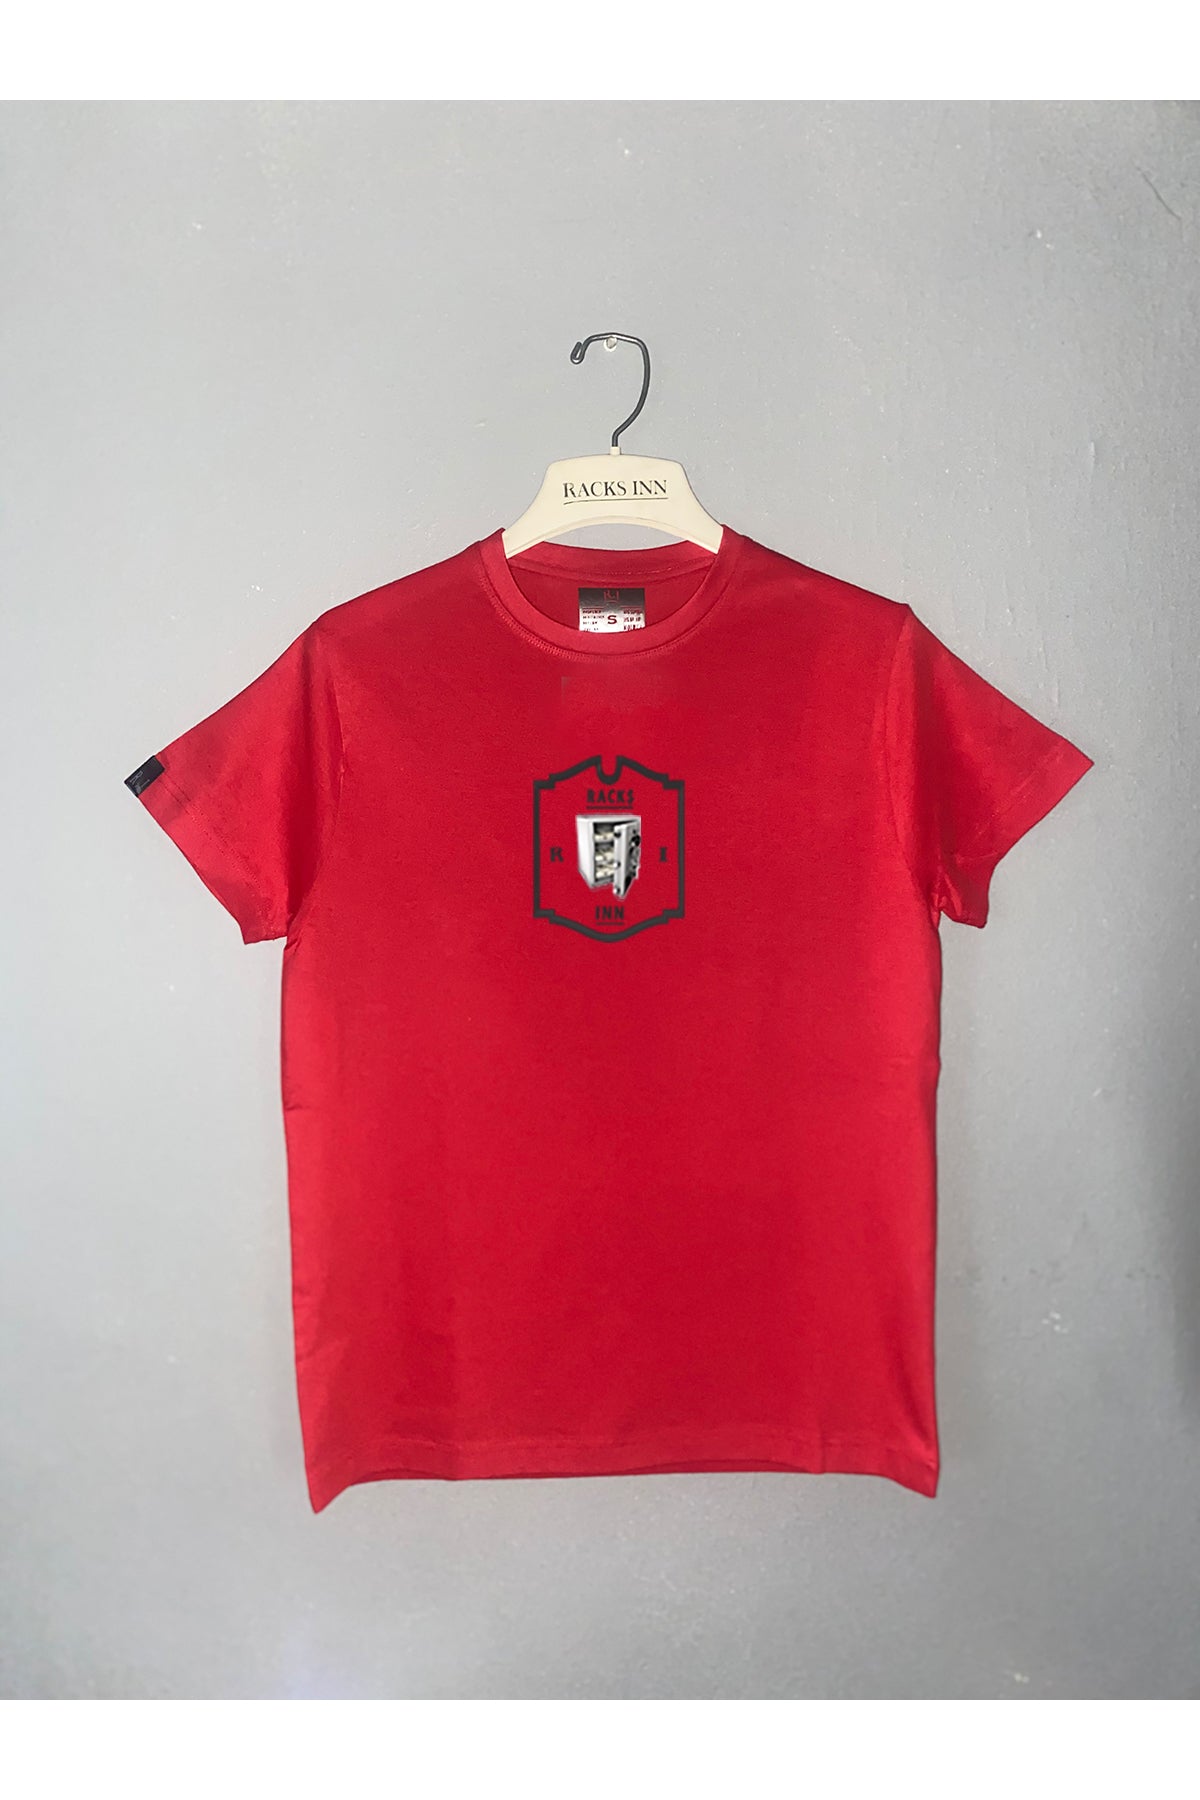 Money Vault T-Shirt - Red